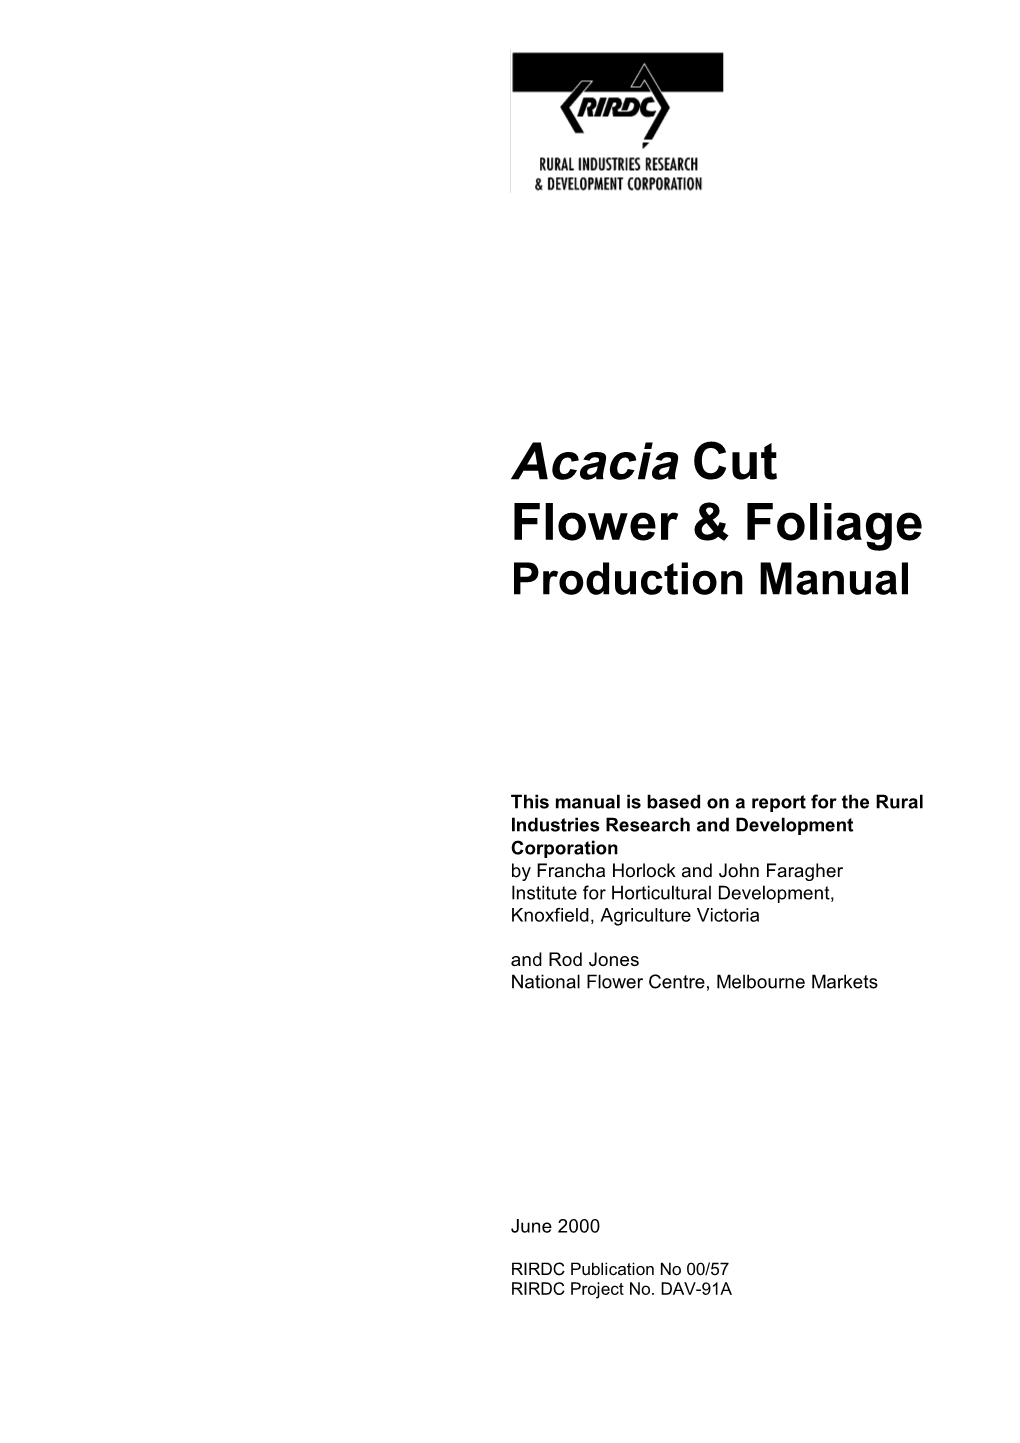 Acacia Cut Flower & Foliage Production Manual